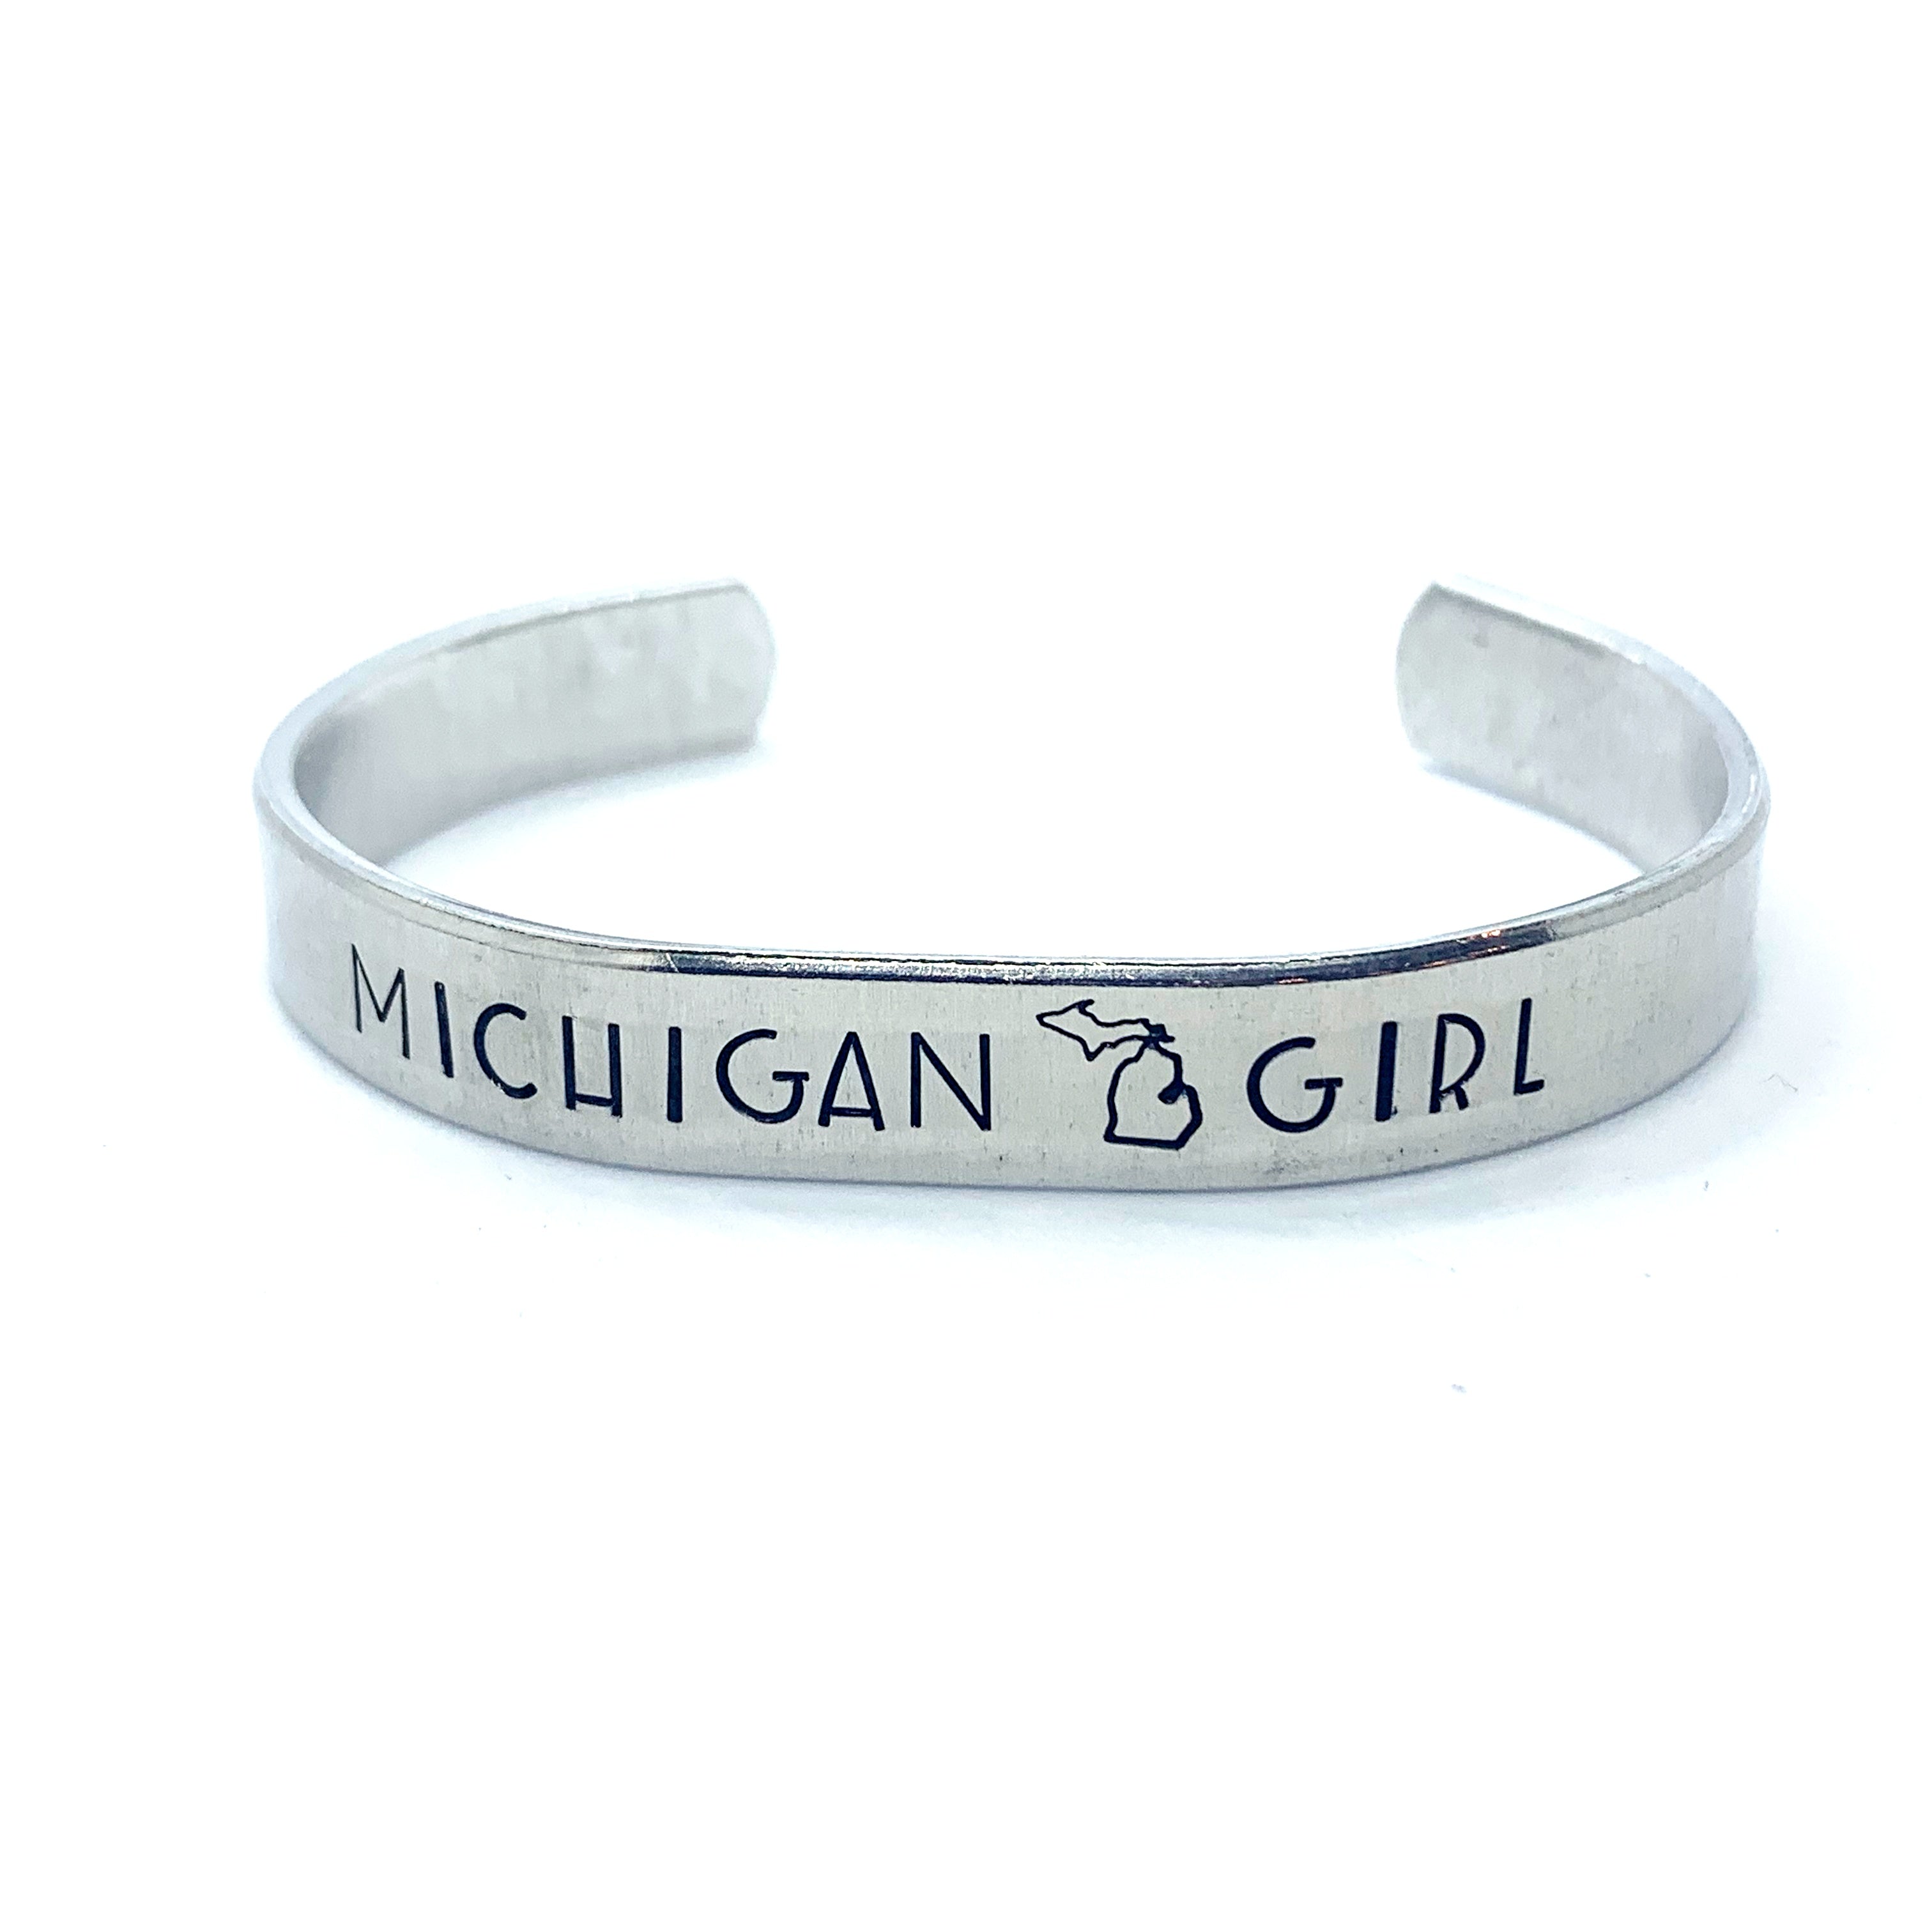 ⅜ inch Aluminum Cuff - Michigan Girl